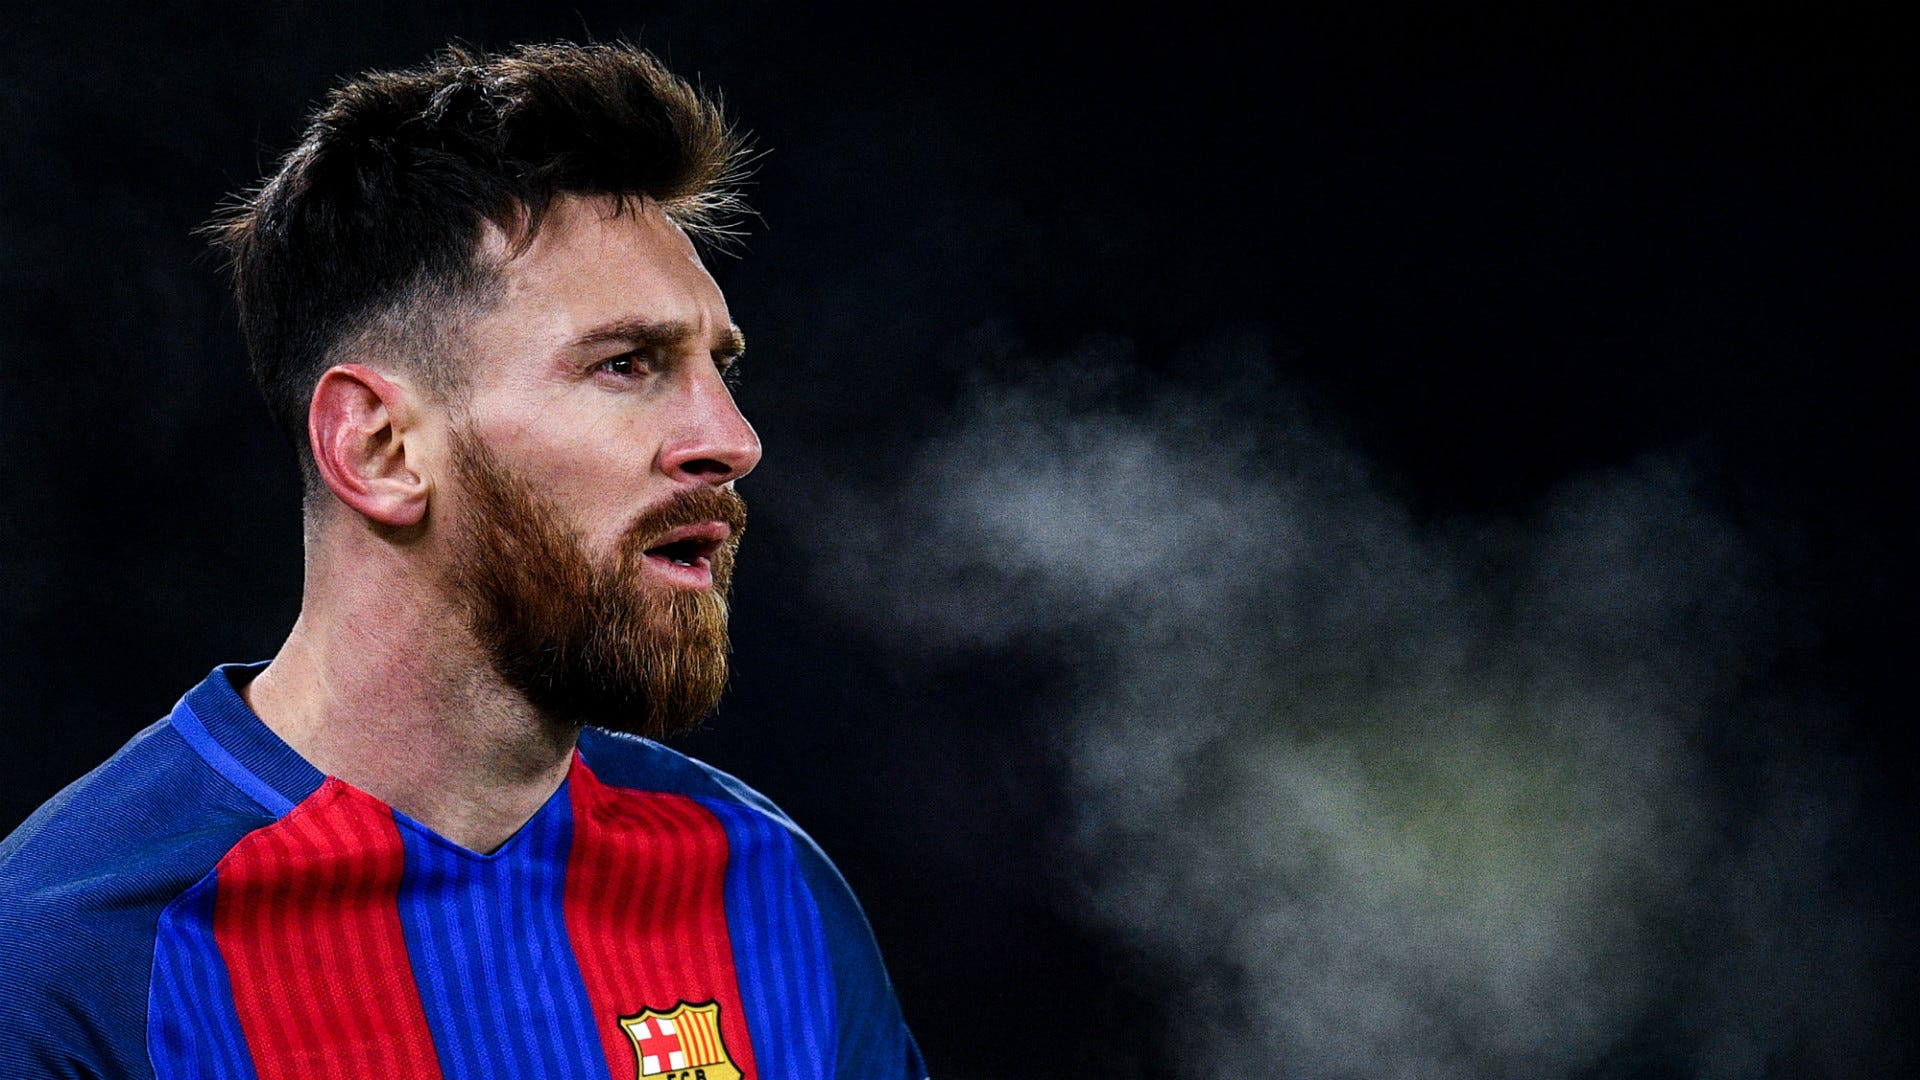 Cùng xem lại những bàn thắng solo tuyệt đẹp của cầu thủ Barcelona trong các trận đấu kinh điển. Tài năng và sự tinh tế của Messi luôn được thể hiện rõ ràng trong mỗi tình huống trên sân. Bấm play ngay để không bỏ lỡ bất cứ khoảnh khắc nào của Messi trên sân.